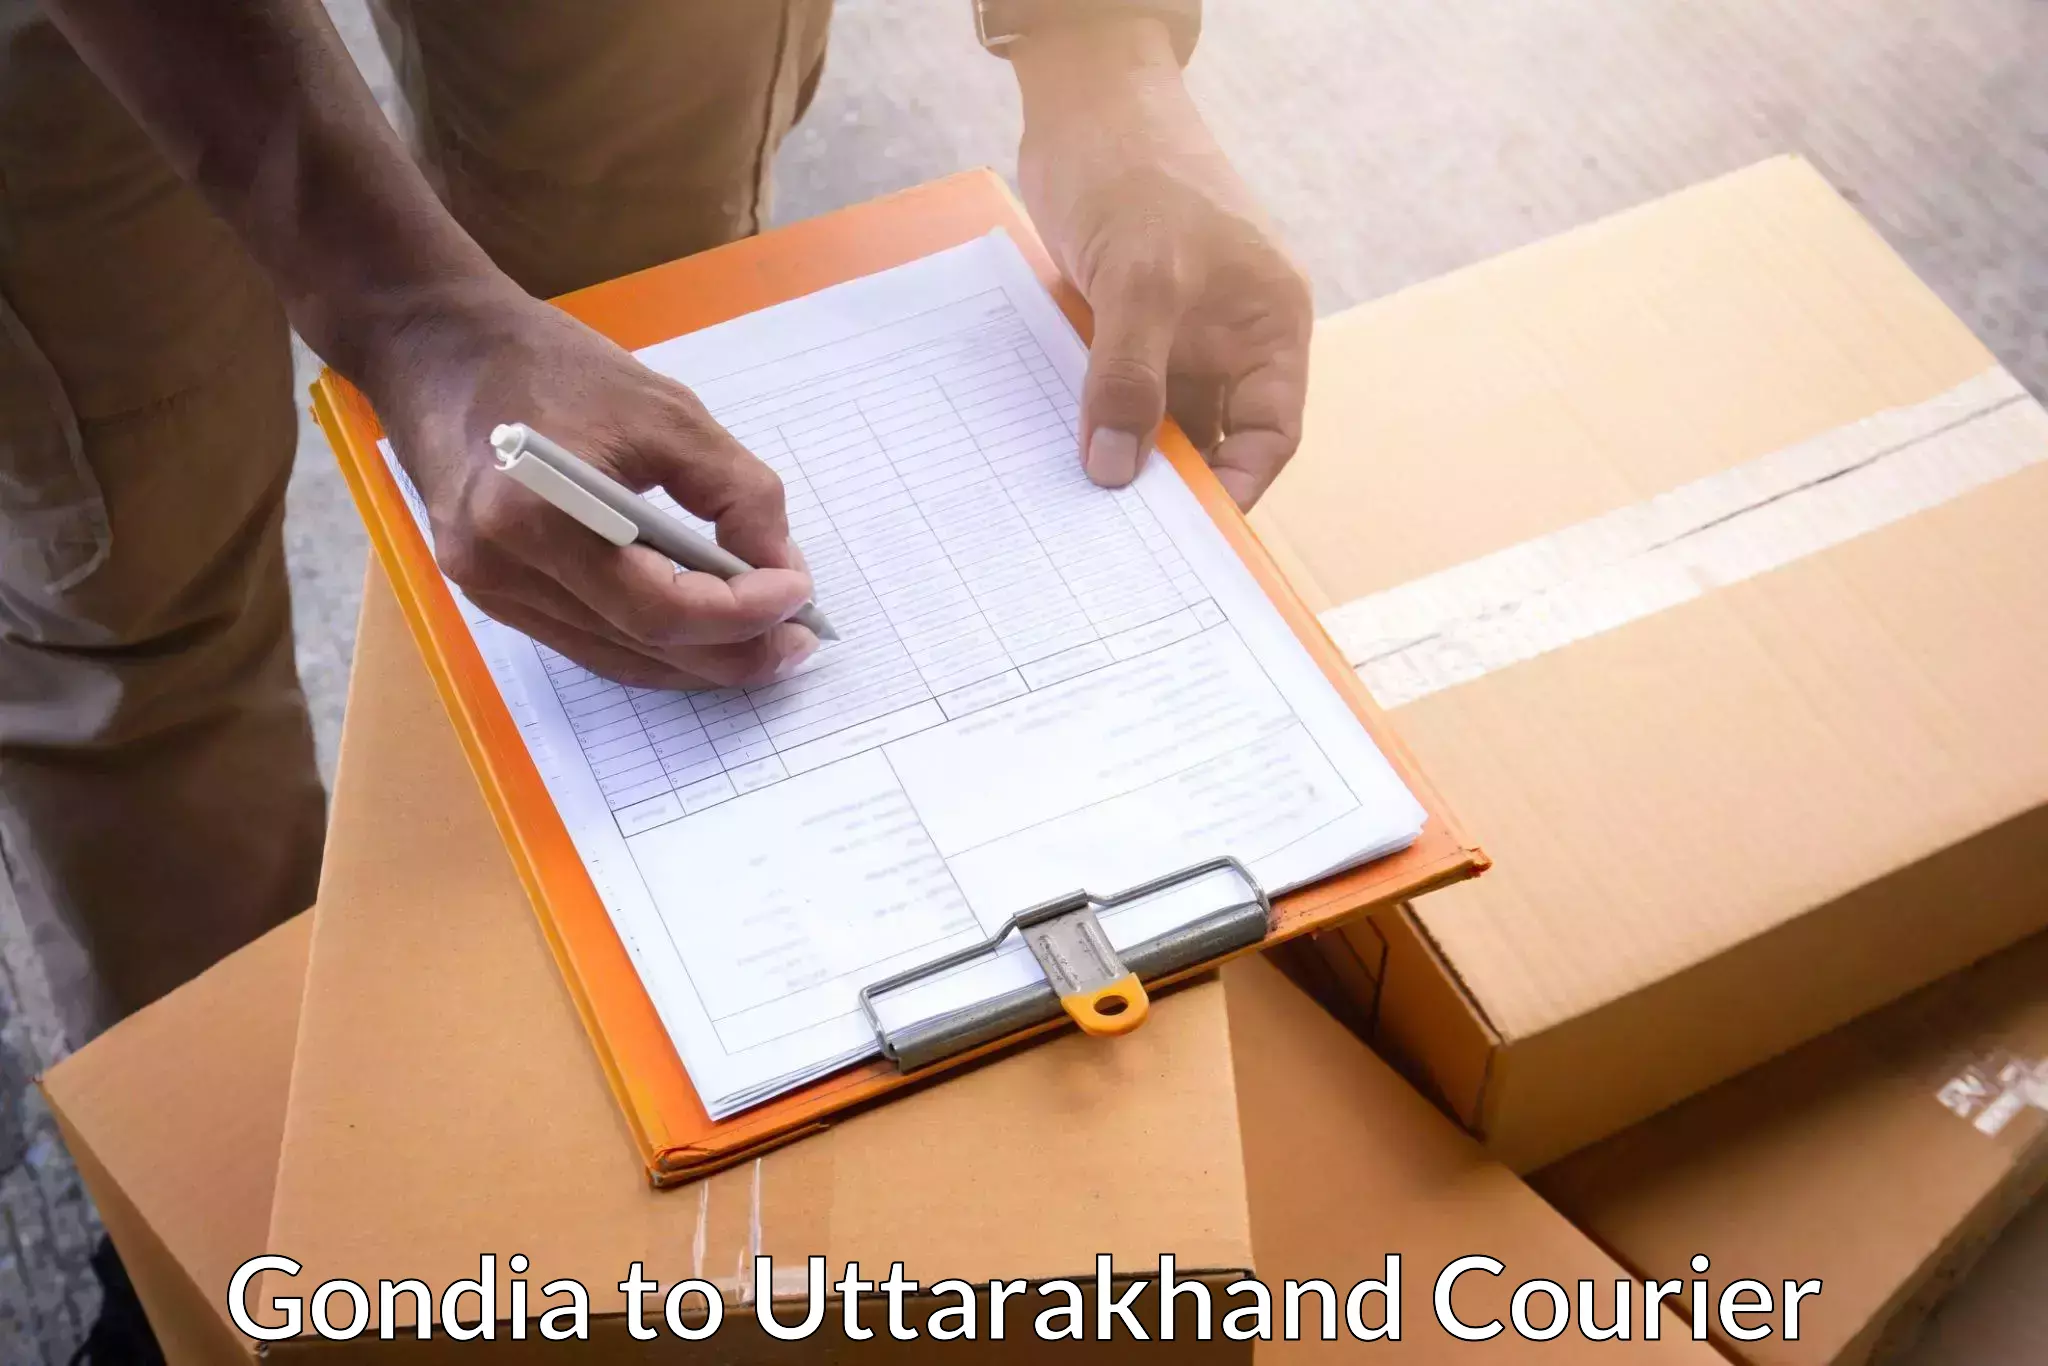 Global freight services Gondia to Uttarkashi